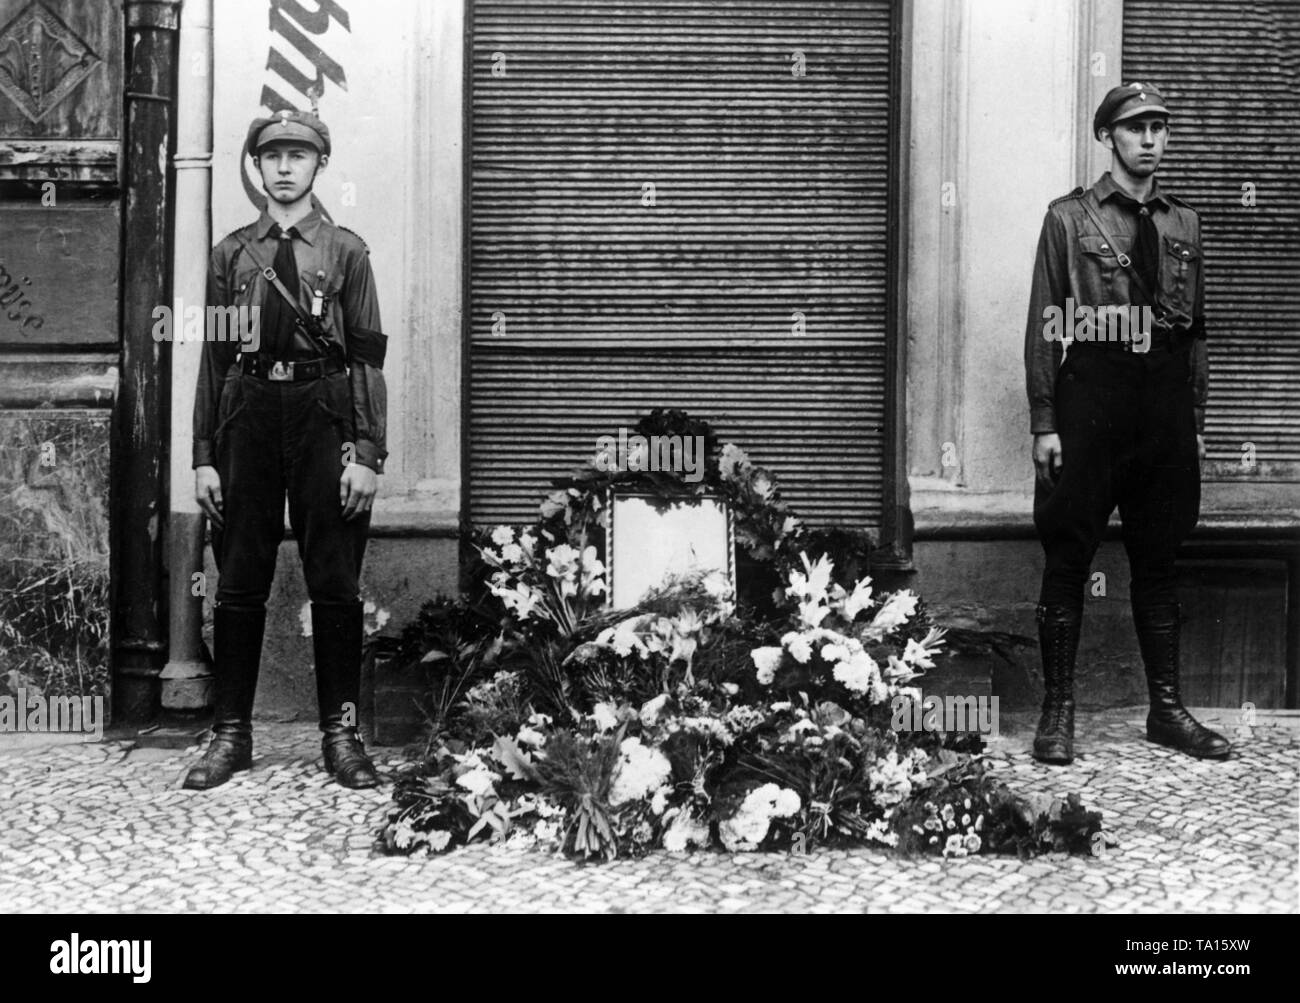 Am Lausitzer Platz in Berlin-Kreuzberg, Mitglieder der Hitlerjugend halten ehrenwache am deathplace der Hitlerjugend Mitglied Hans Hoffmann, der am 17. August, 1931 ermordet wurde. Stockfoto